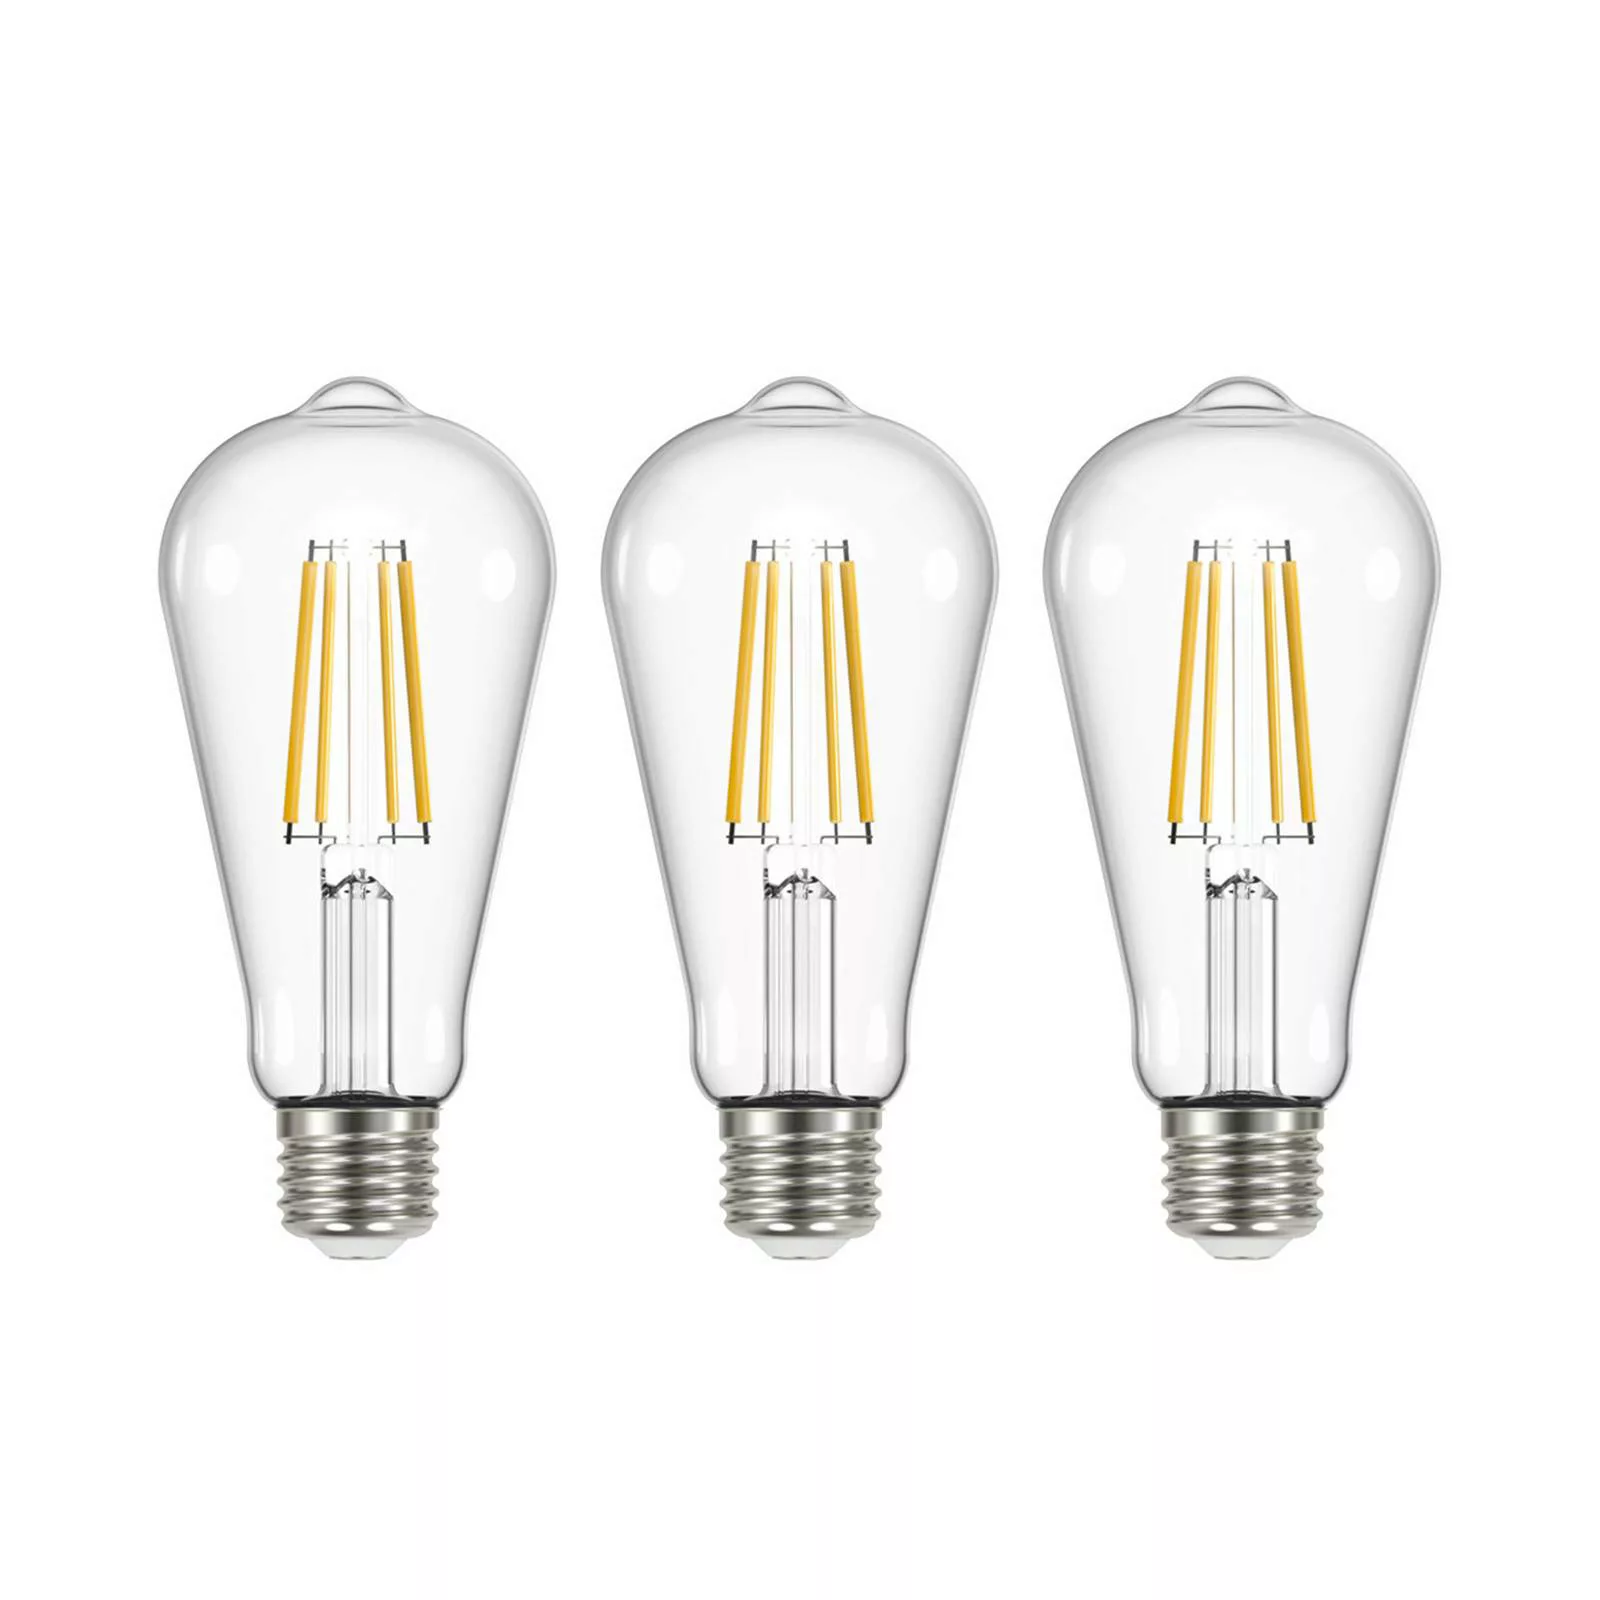 LED-Leuchtmittel Filament klar E27 3,8W 3000K 806lm 3er-Set günstig online kaufen